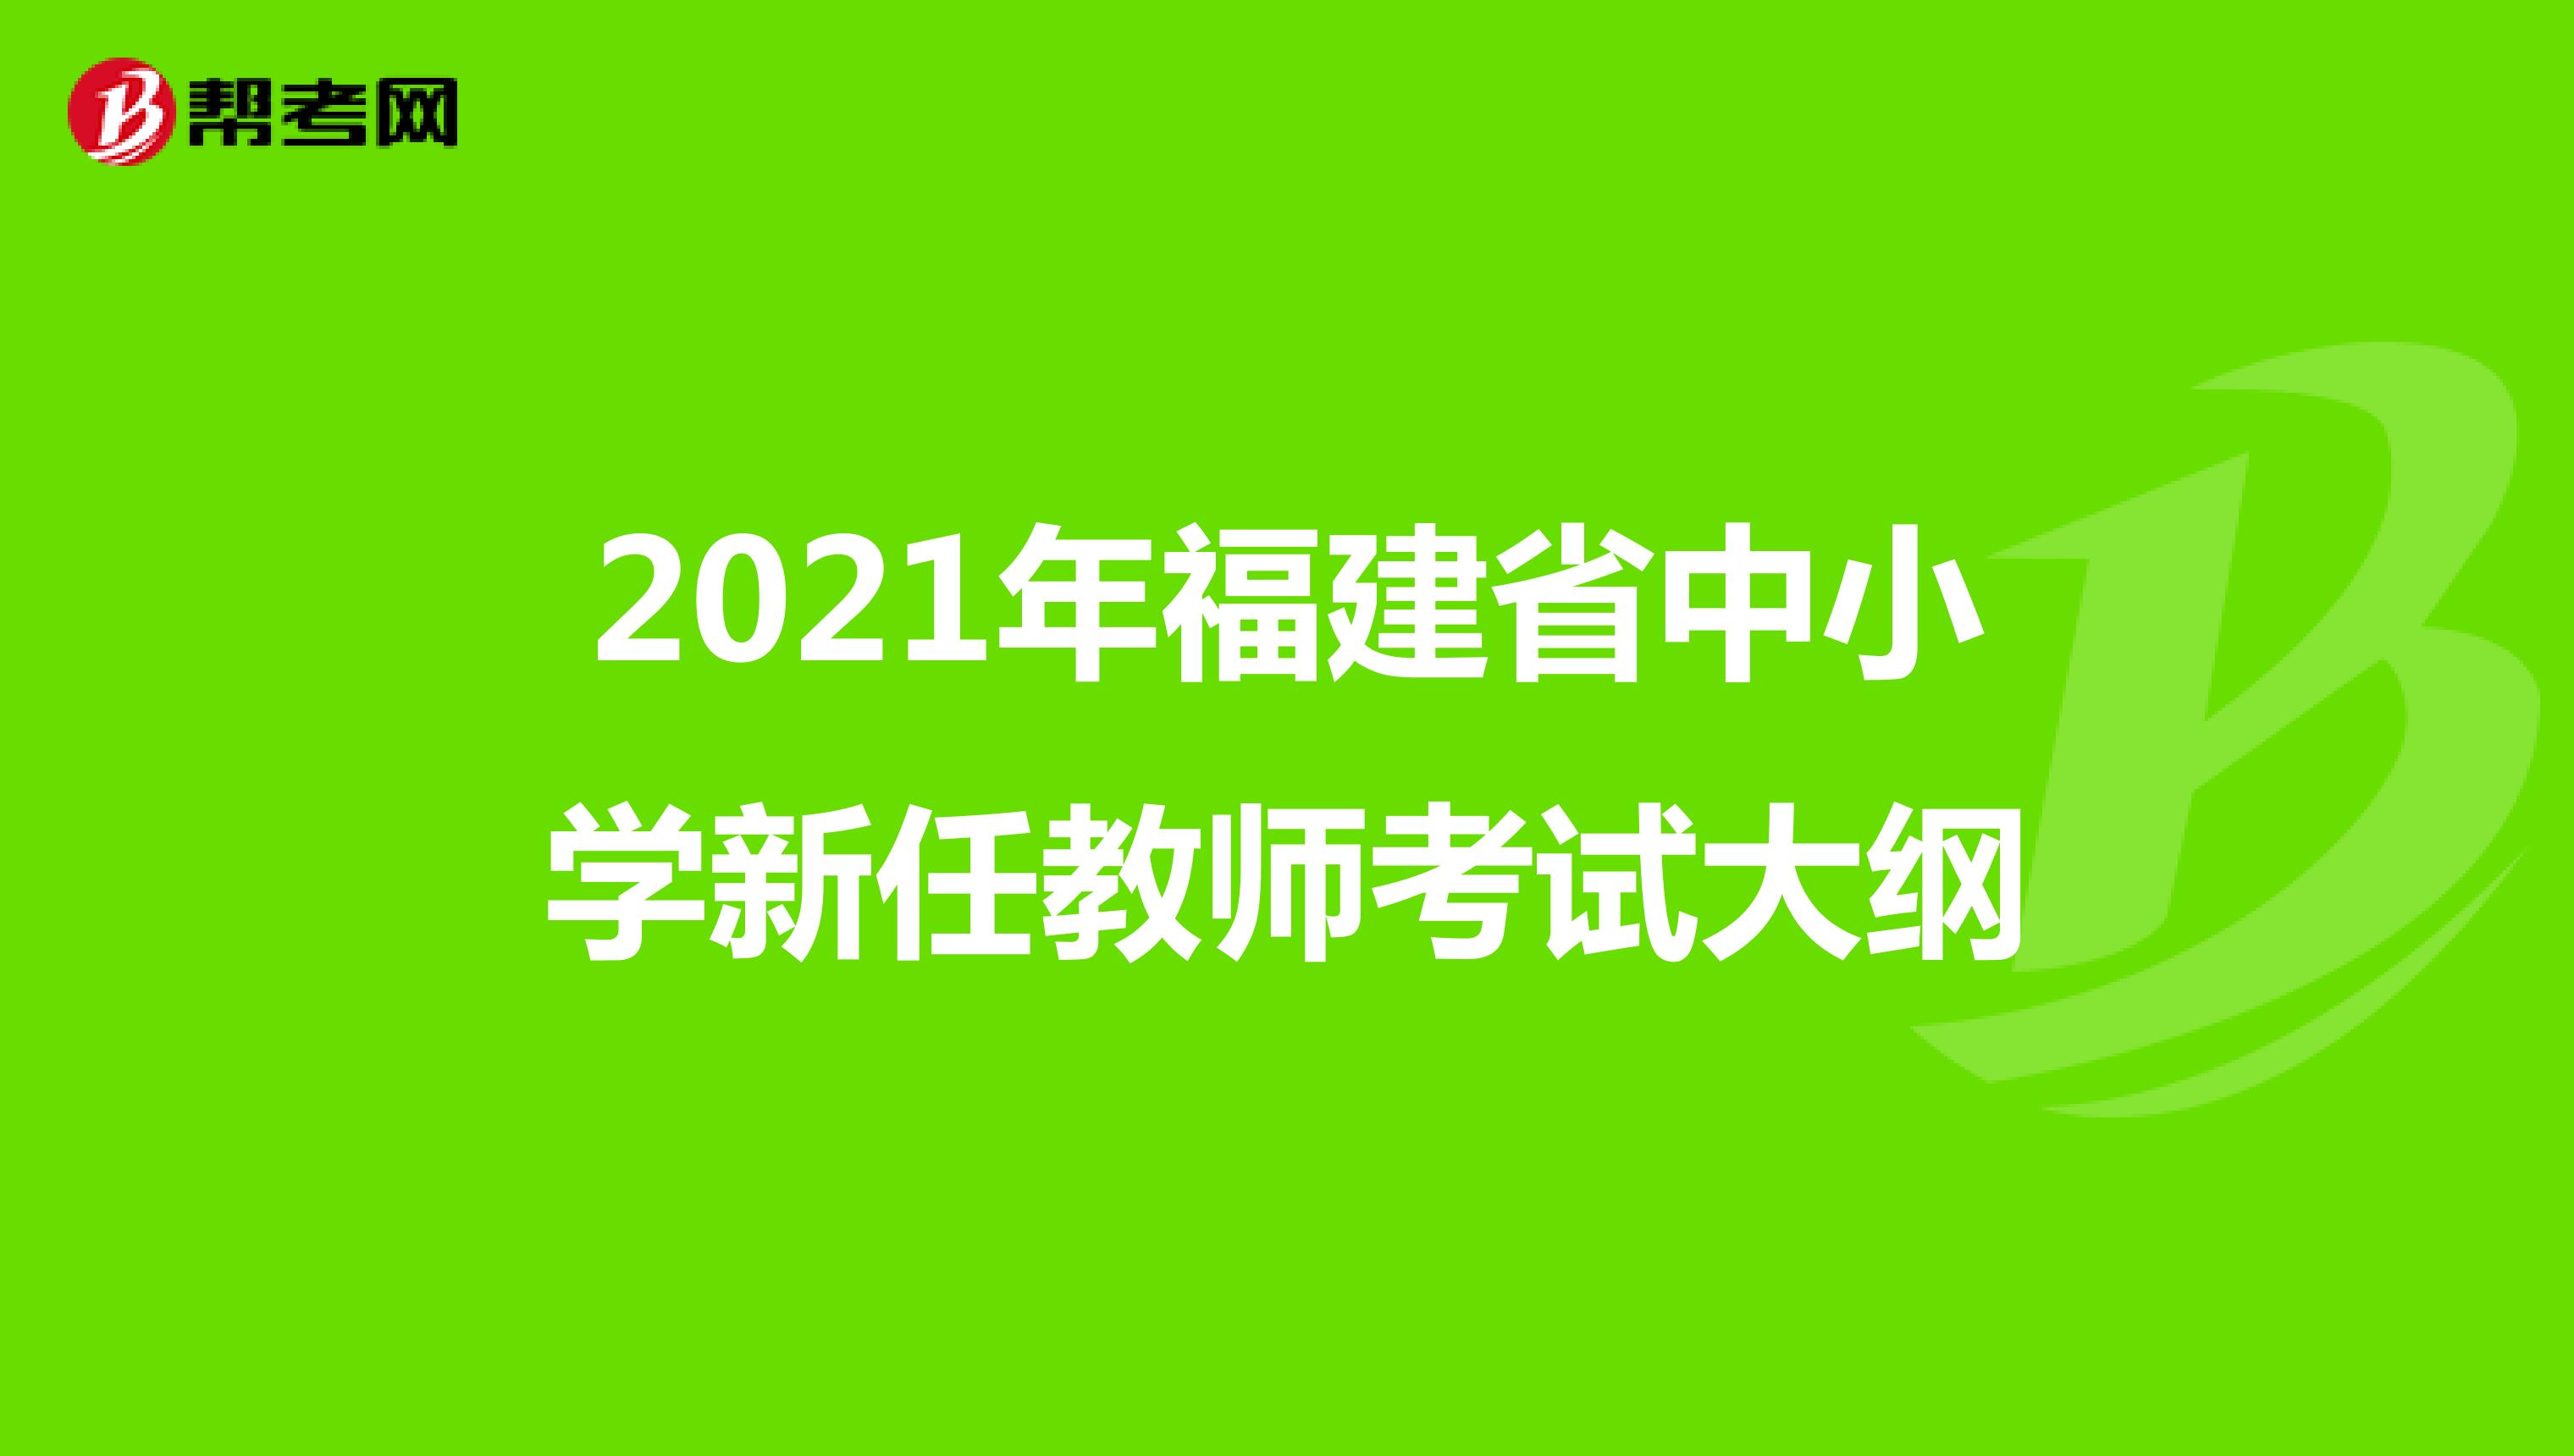 2021年福建省中小学新任教师考试大纲